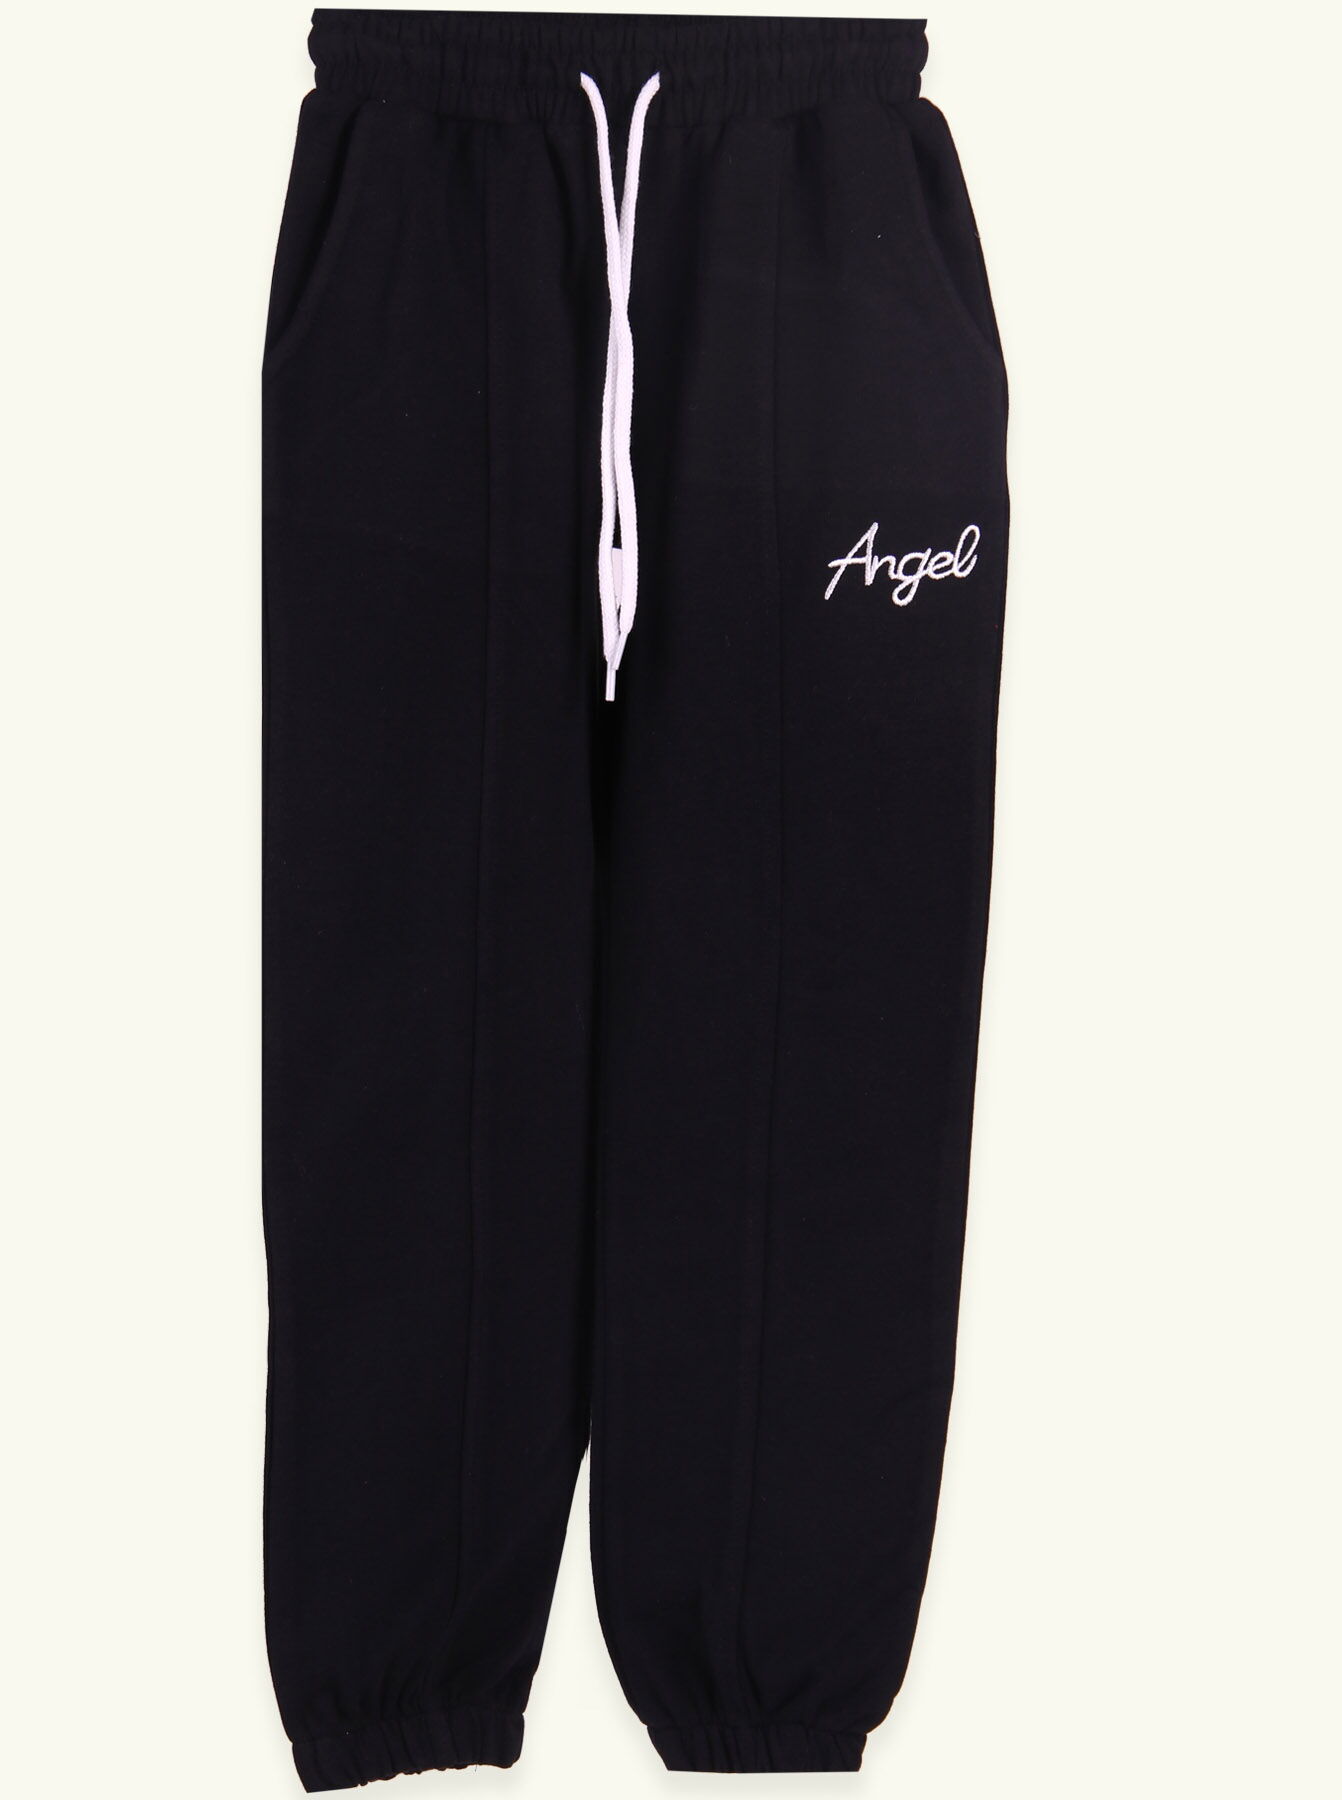 Спортивные штаны для девочки Breeze темно-синие 15309 - цена